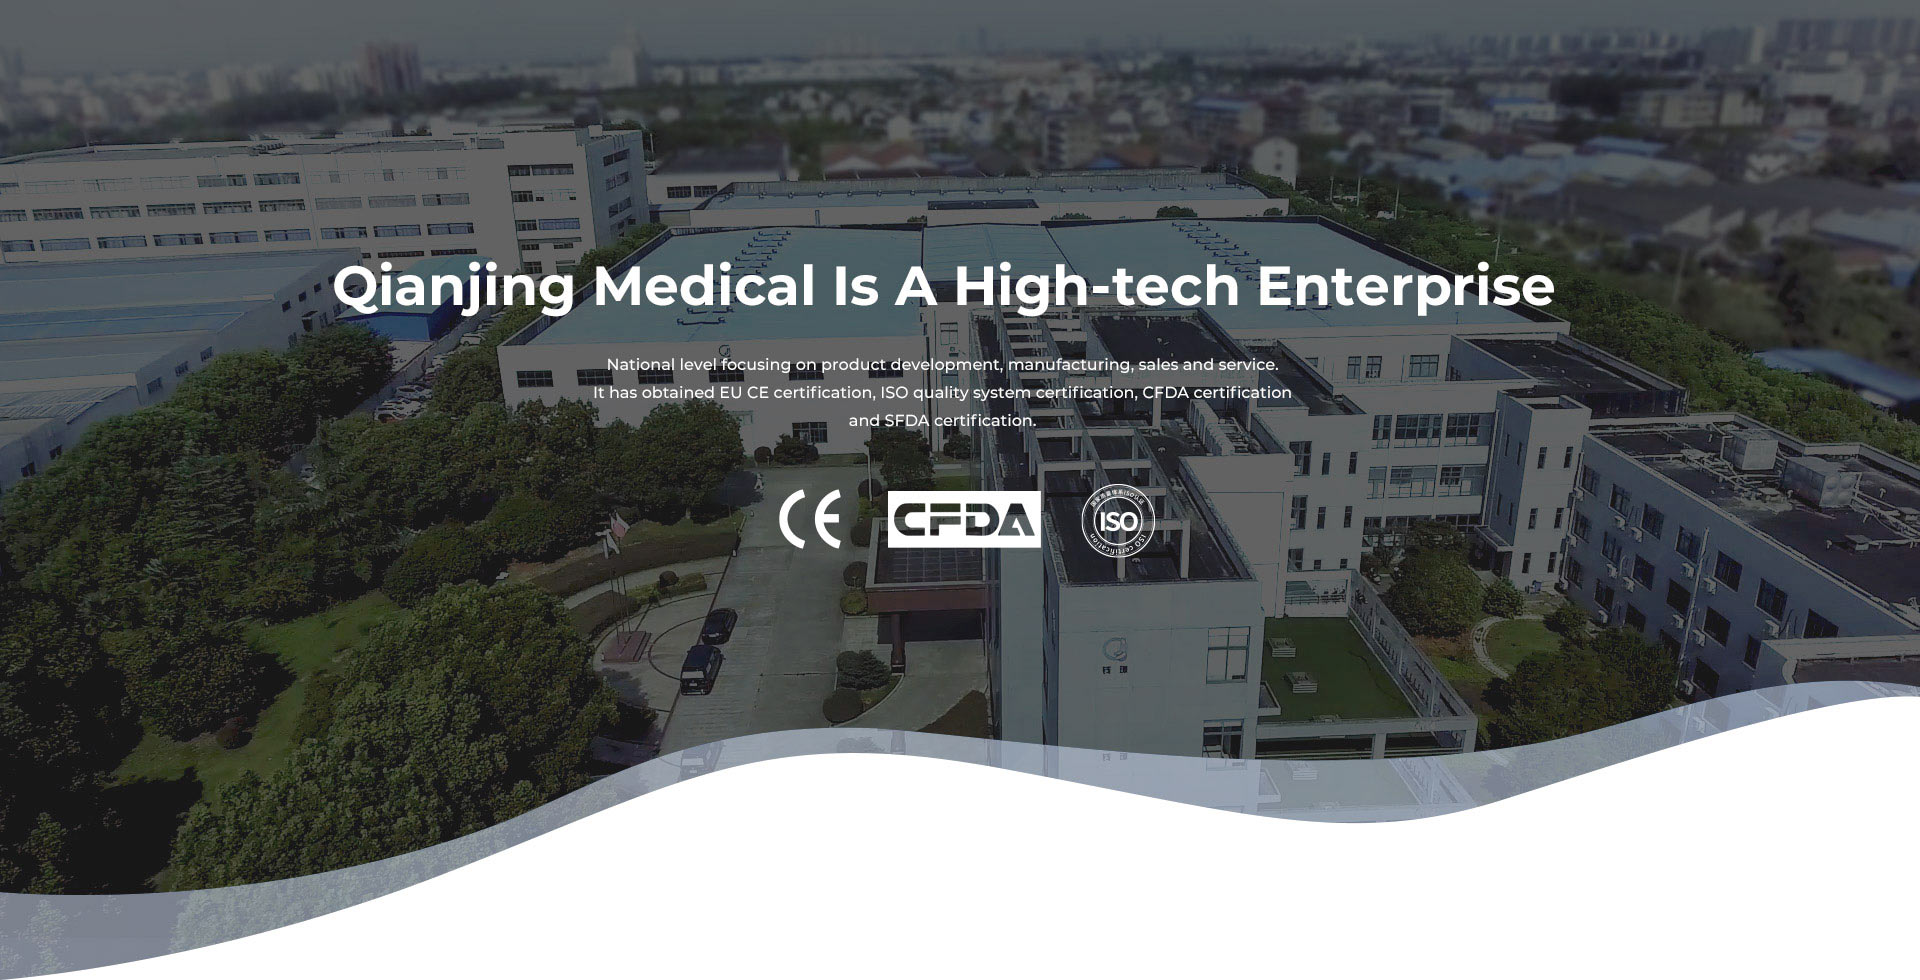 Qianjing Medical Is A High-tech Enterprise